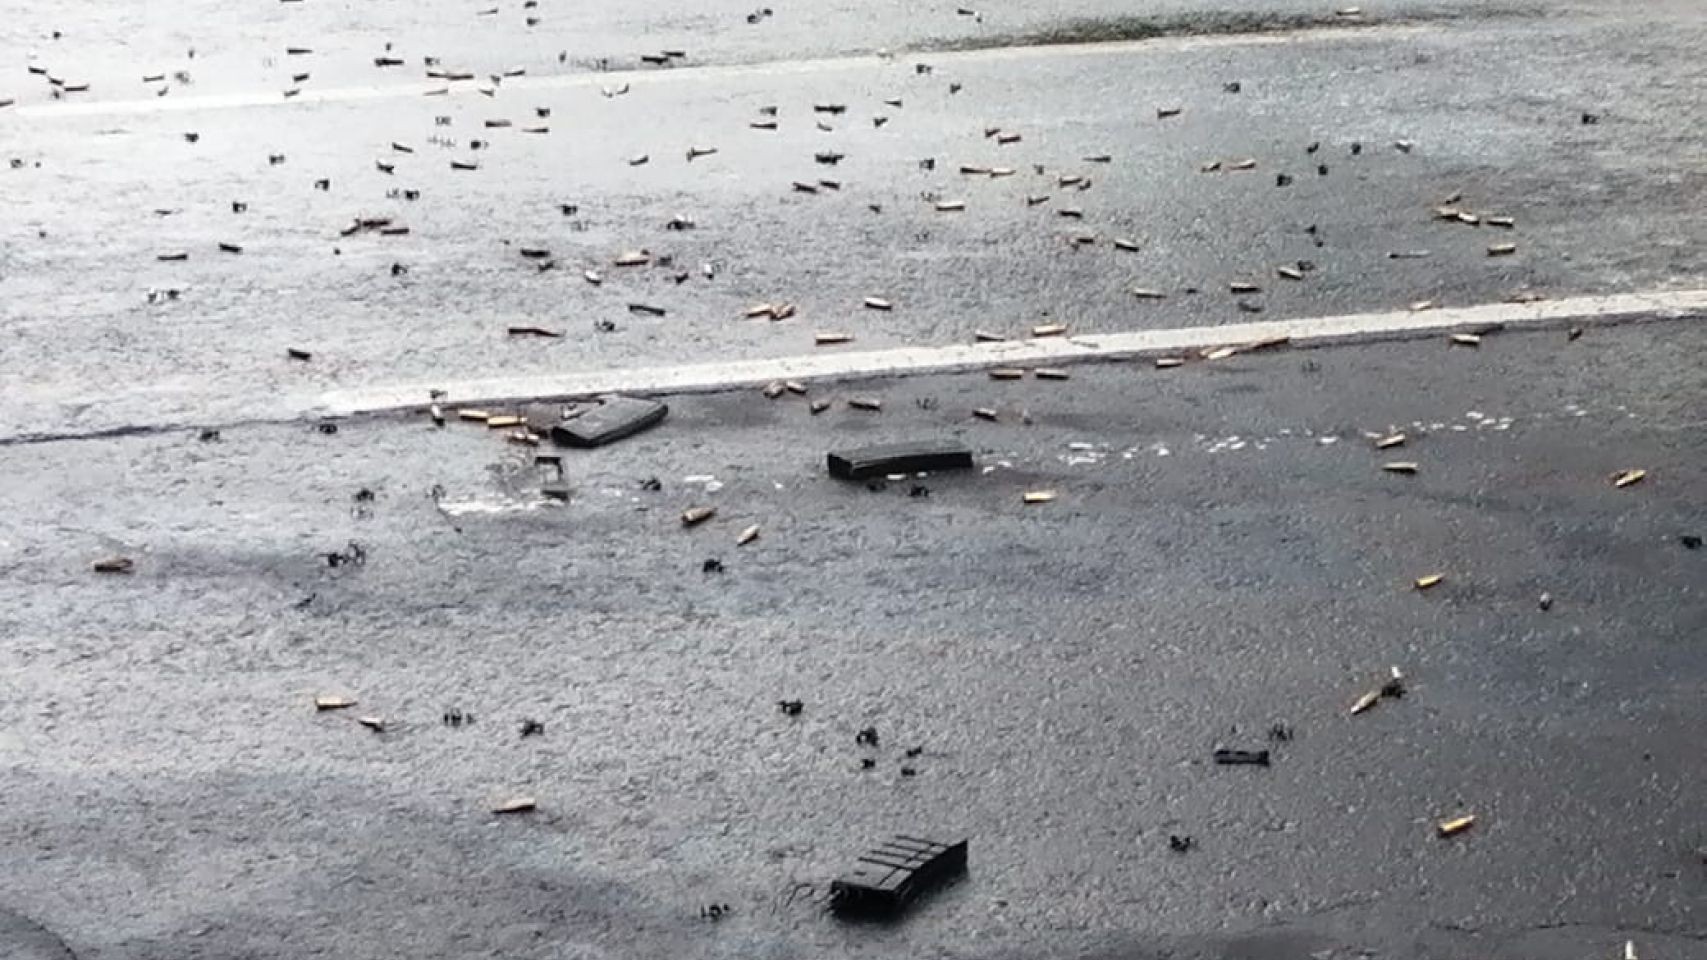 Decenas de casquillos quedaron sobre el asfalto en el lugar de los hechos. (Foto: Cuartoscuro)